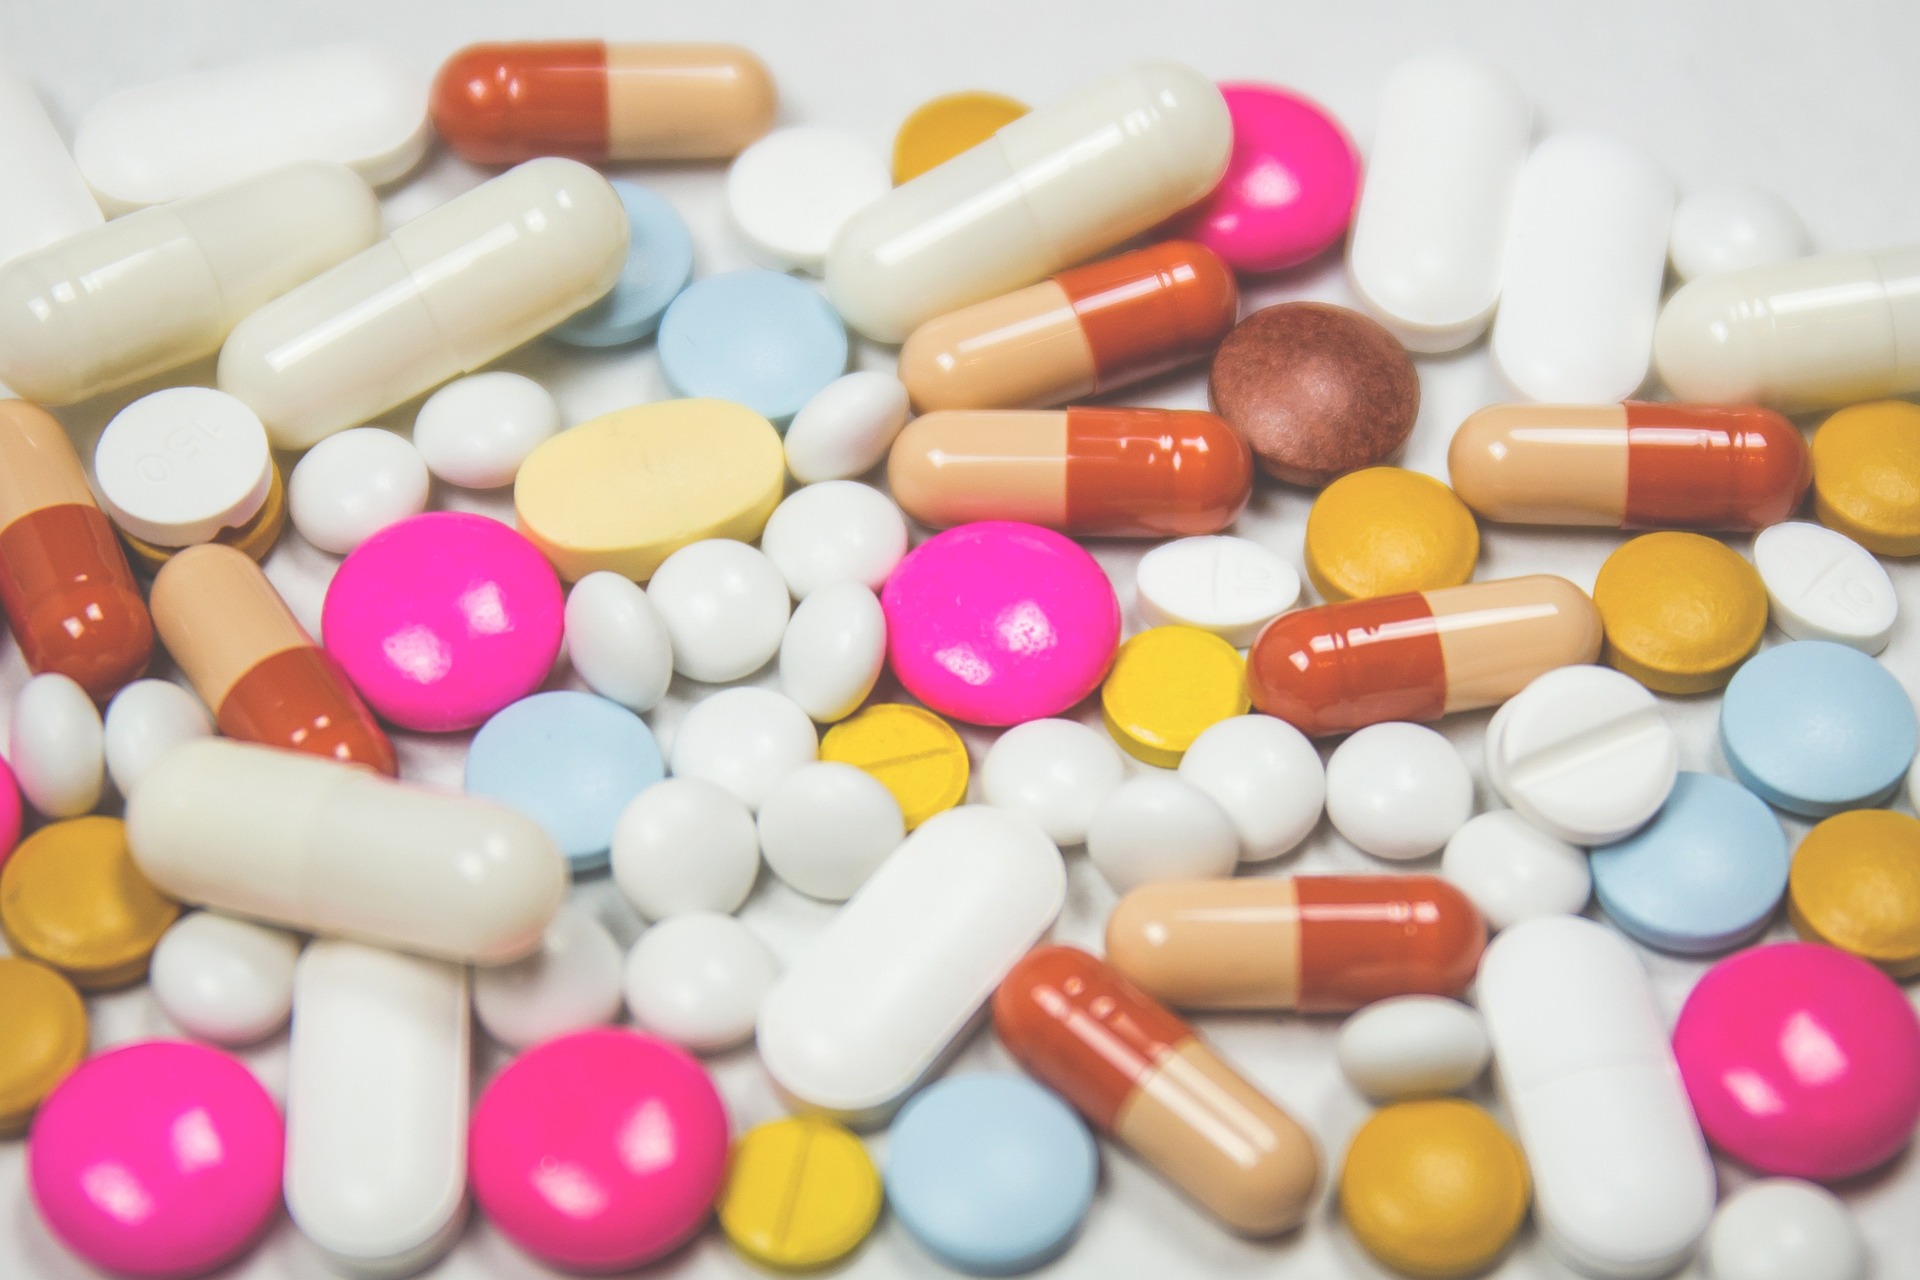 Marché pharmaceutique: la pénurie de médicaments inquiète 